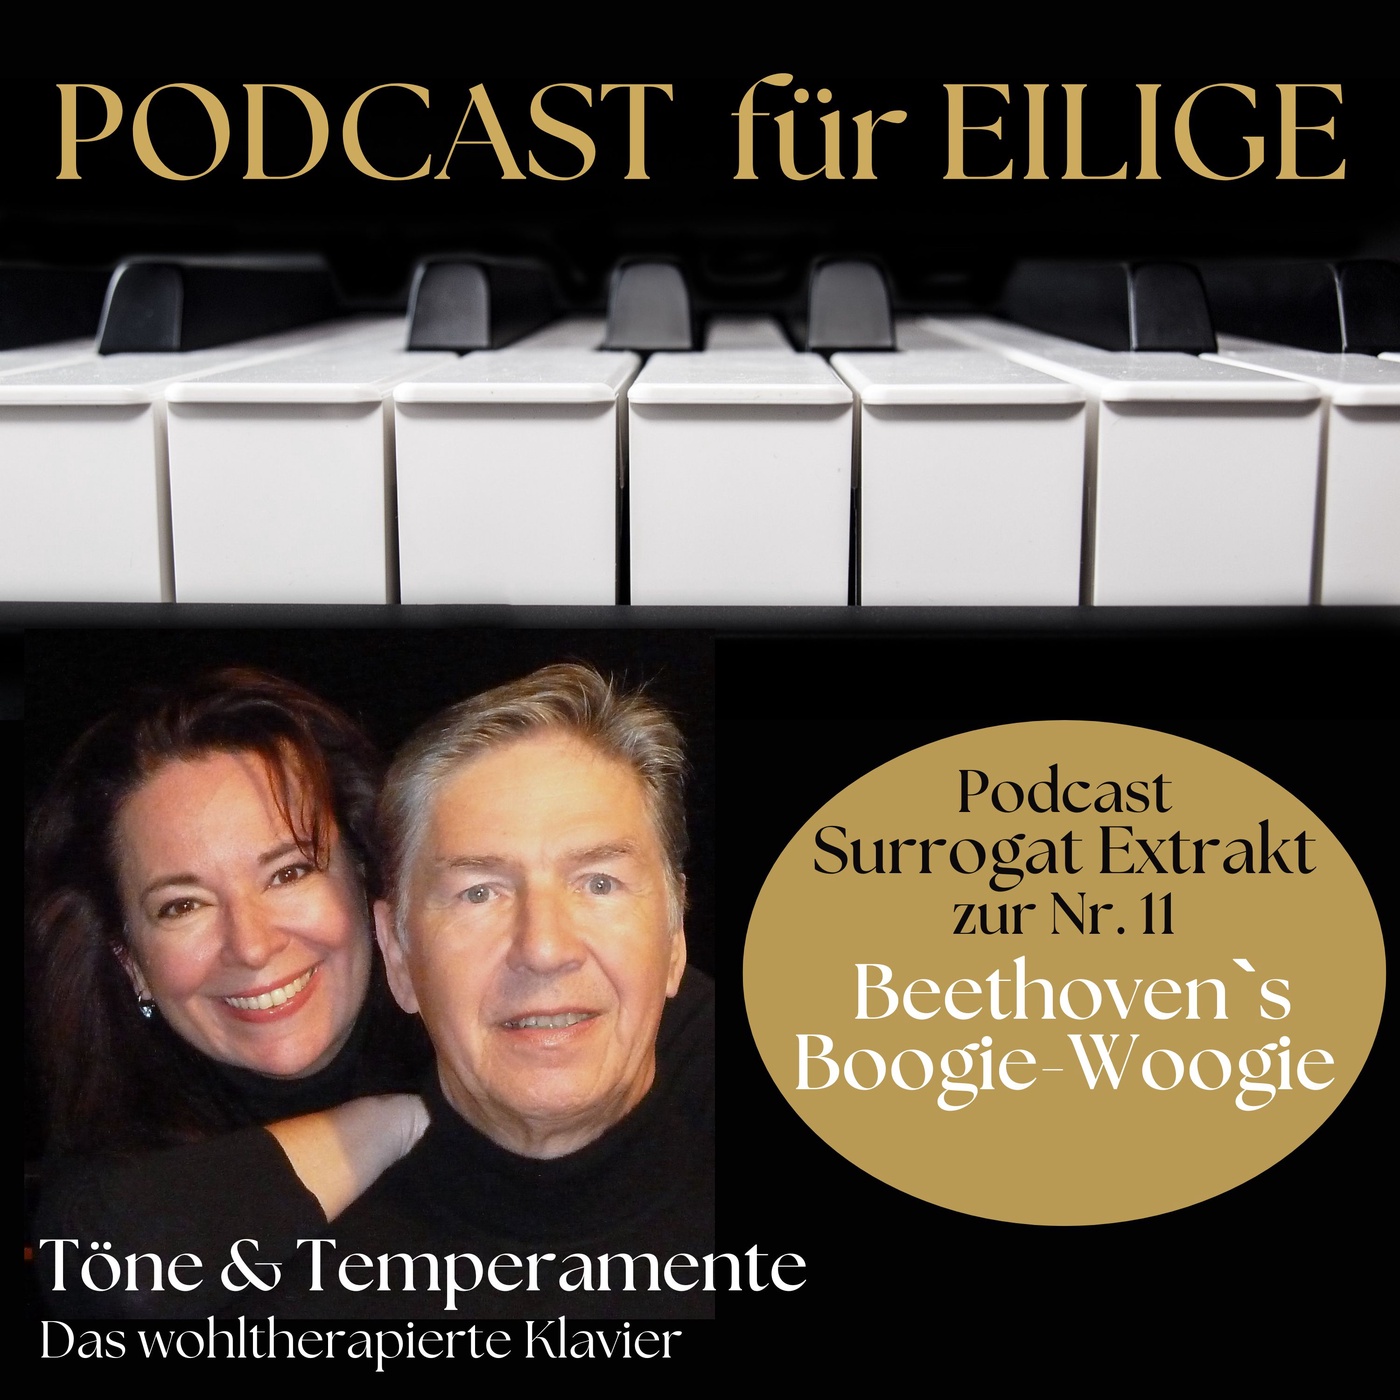 #11 1/4 „Töne & Temperamente für Eilige“ - Wieviel Boogie-Woogie steckt in Beethoven?